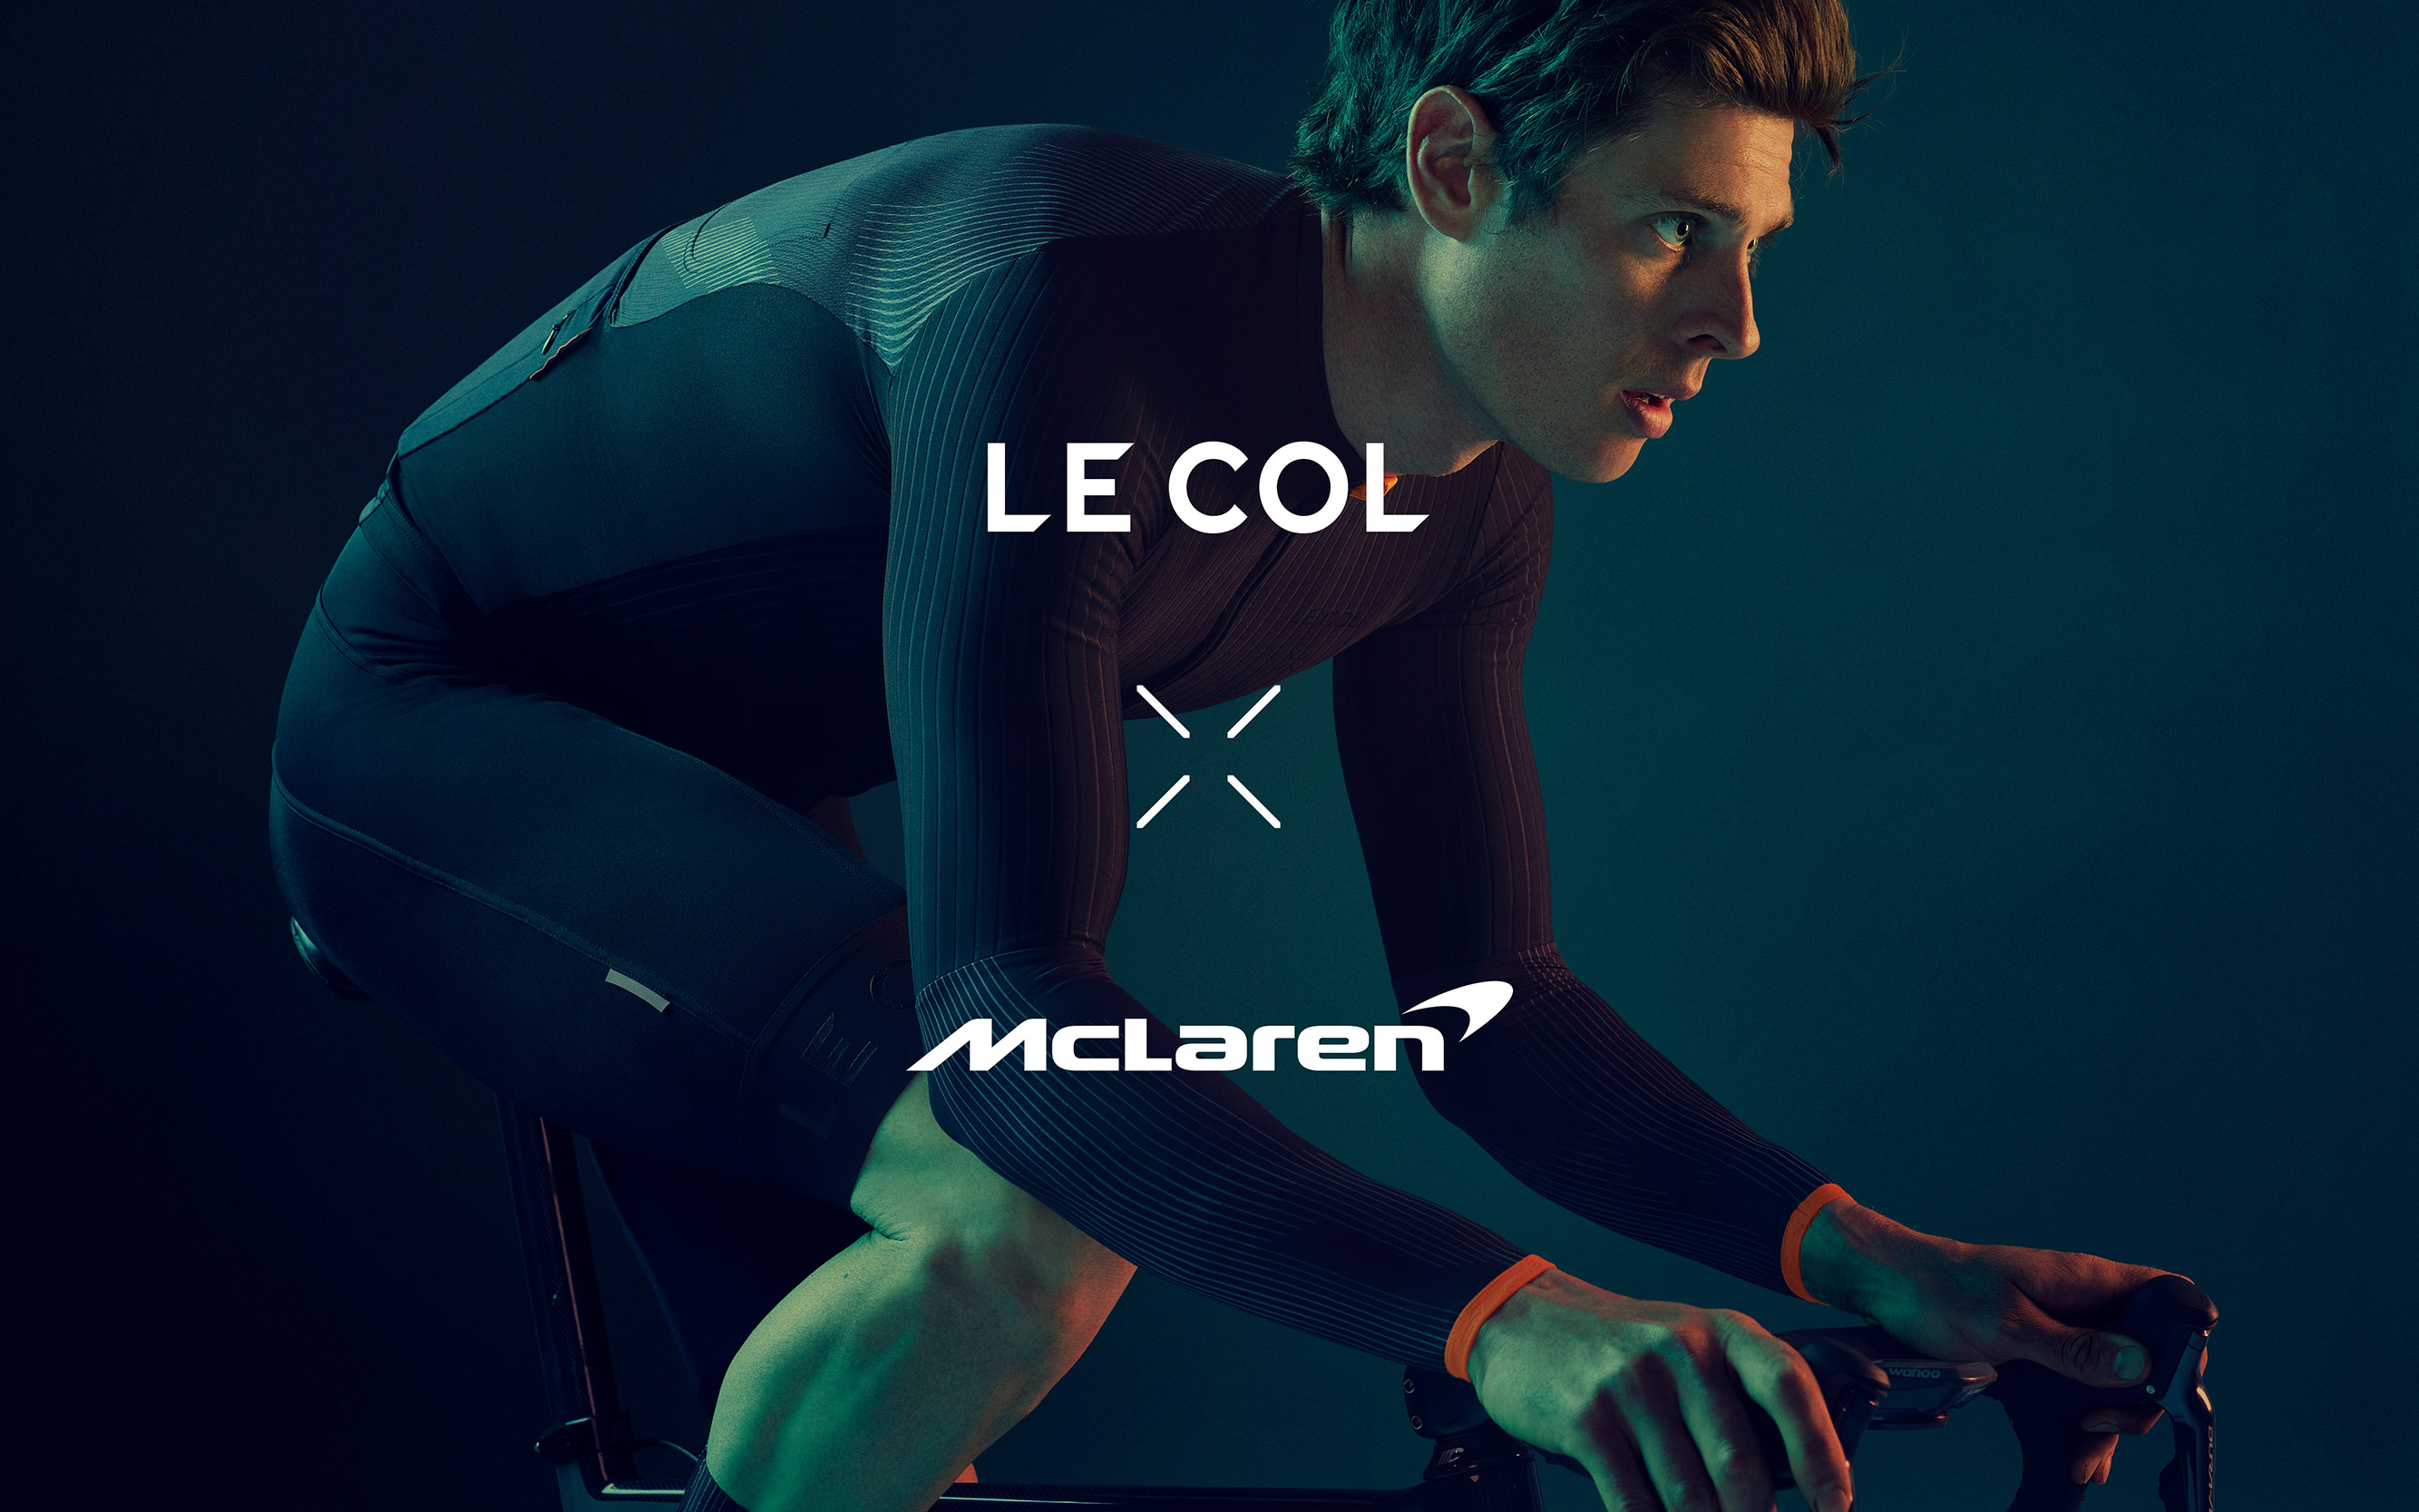 Limited Edition Design  Le Col x McLaren Project Aero - Limited Edition  Design